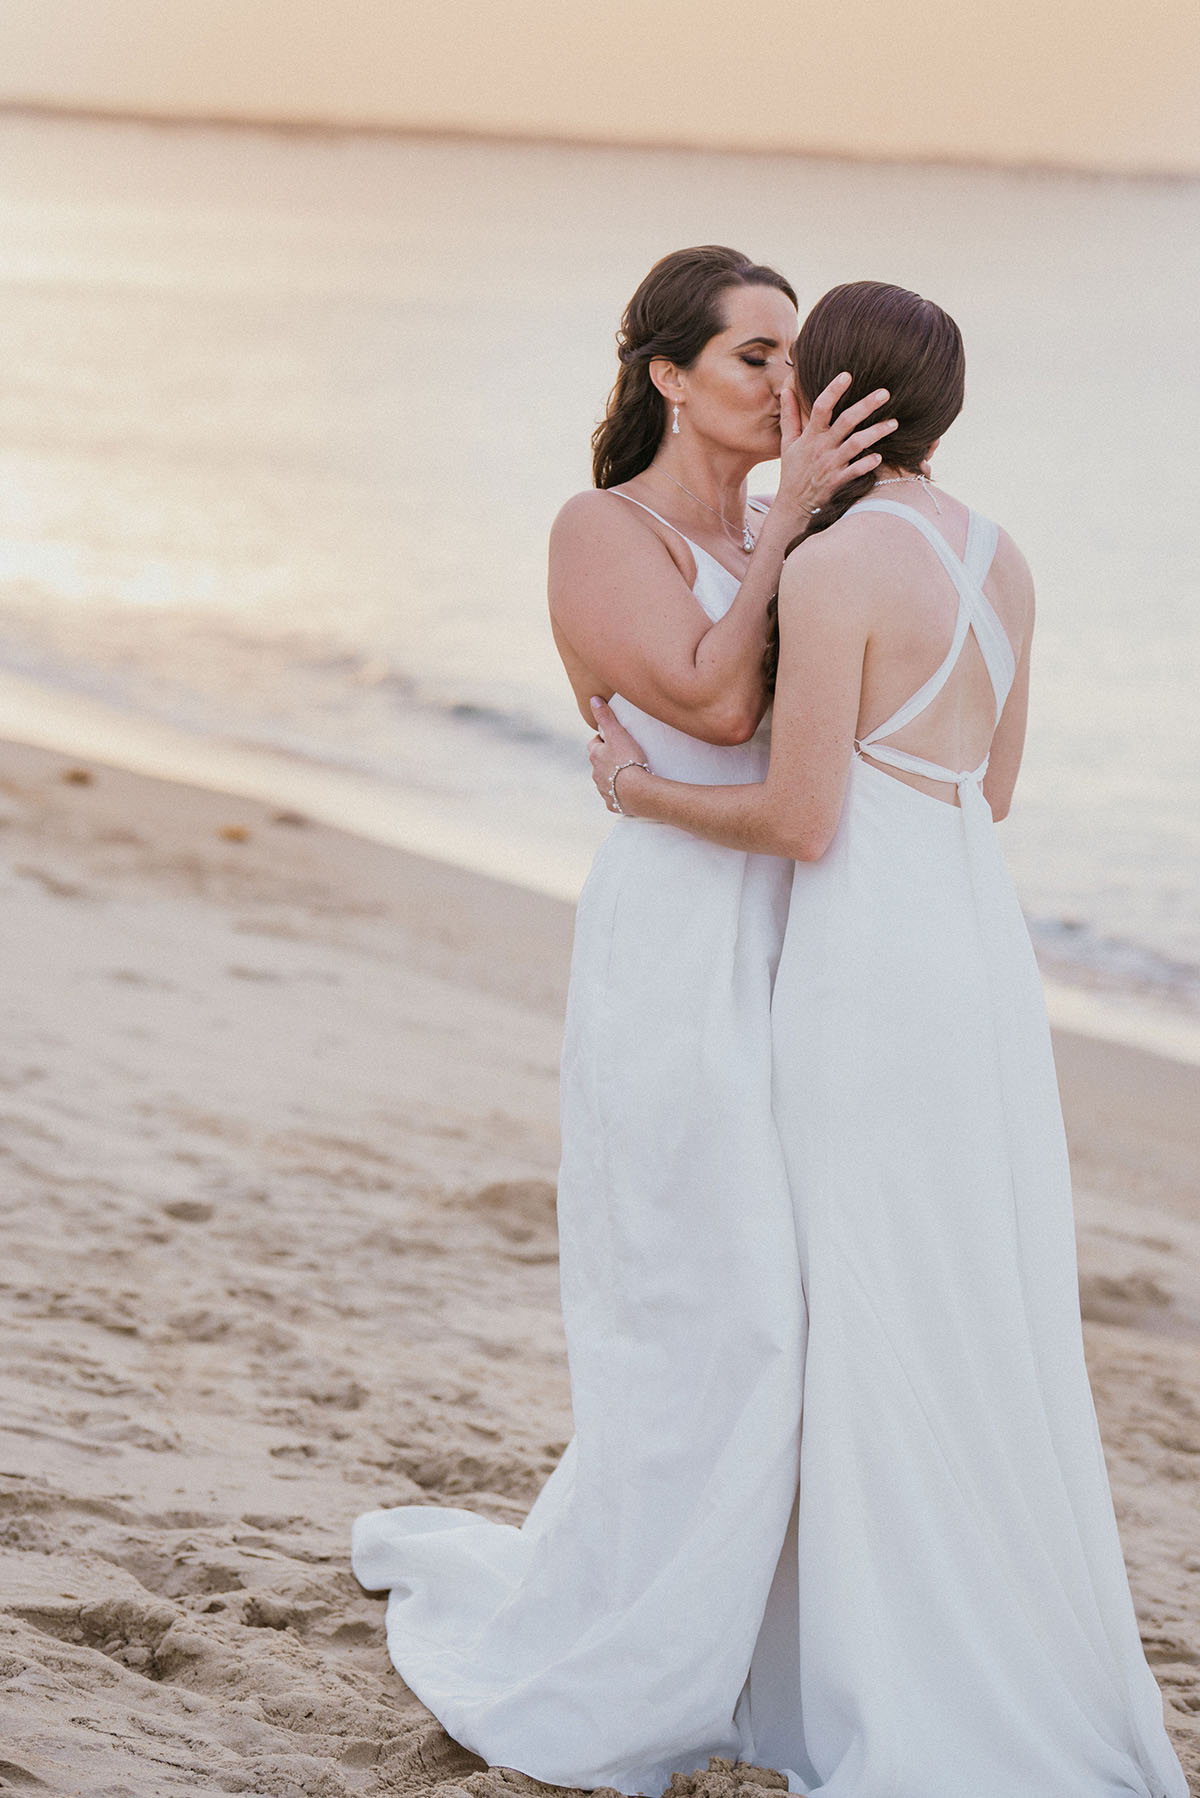 Beach wedding at First Landing State Park in Virginia Beach, Virginia LGBTQ+ weddings lesbian wedding two brides beach ocean fall wedding kiss